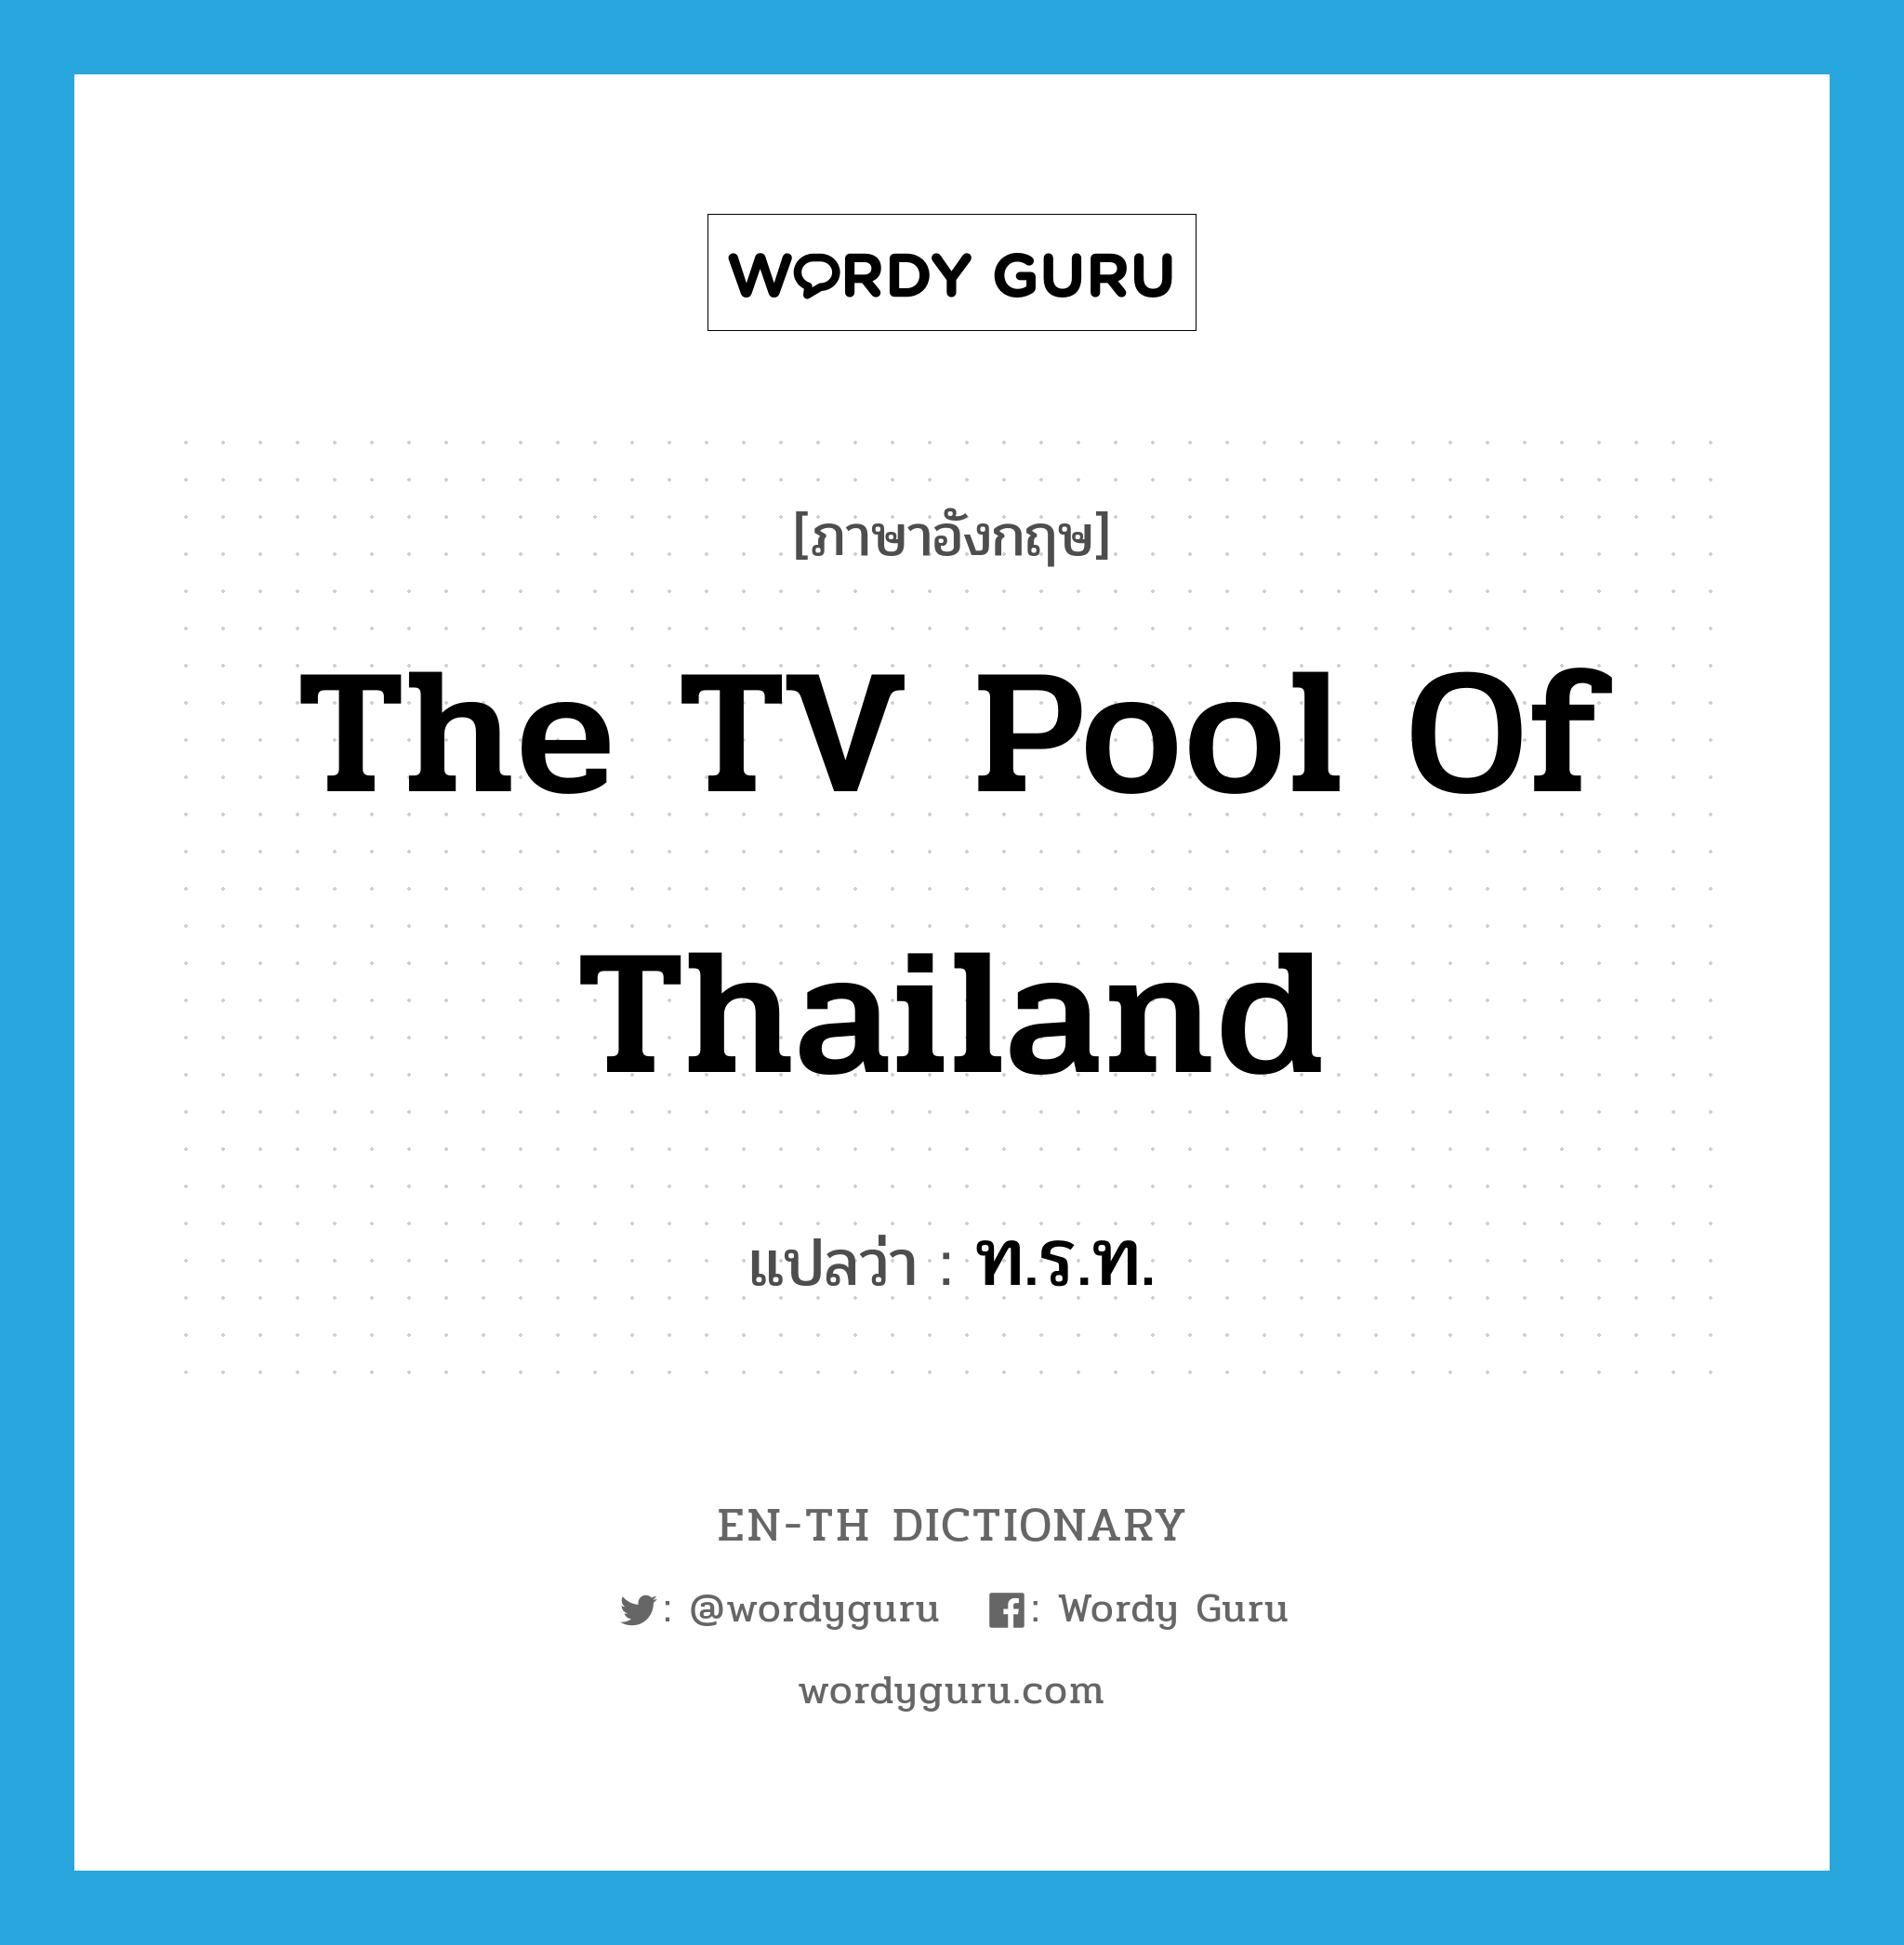 ท.ร.ท. ภาษาอังกฤษ?, คำศัพท์ภาษาอังกฤษ ท.ร.ท. แปลว่า The TV Pool of Thailand ประเภท N หมวด N